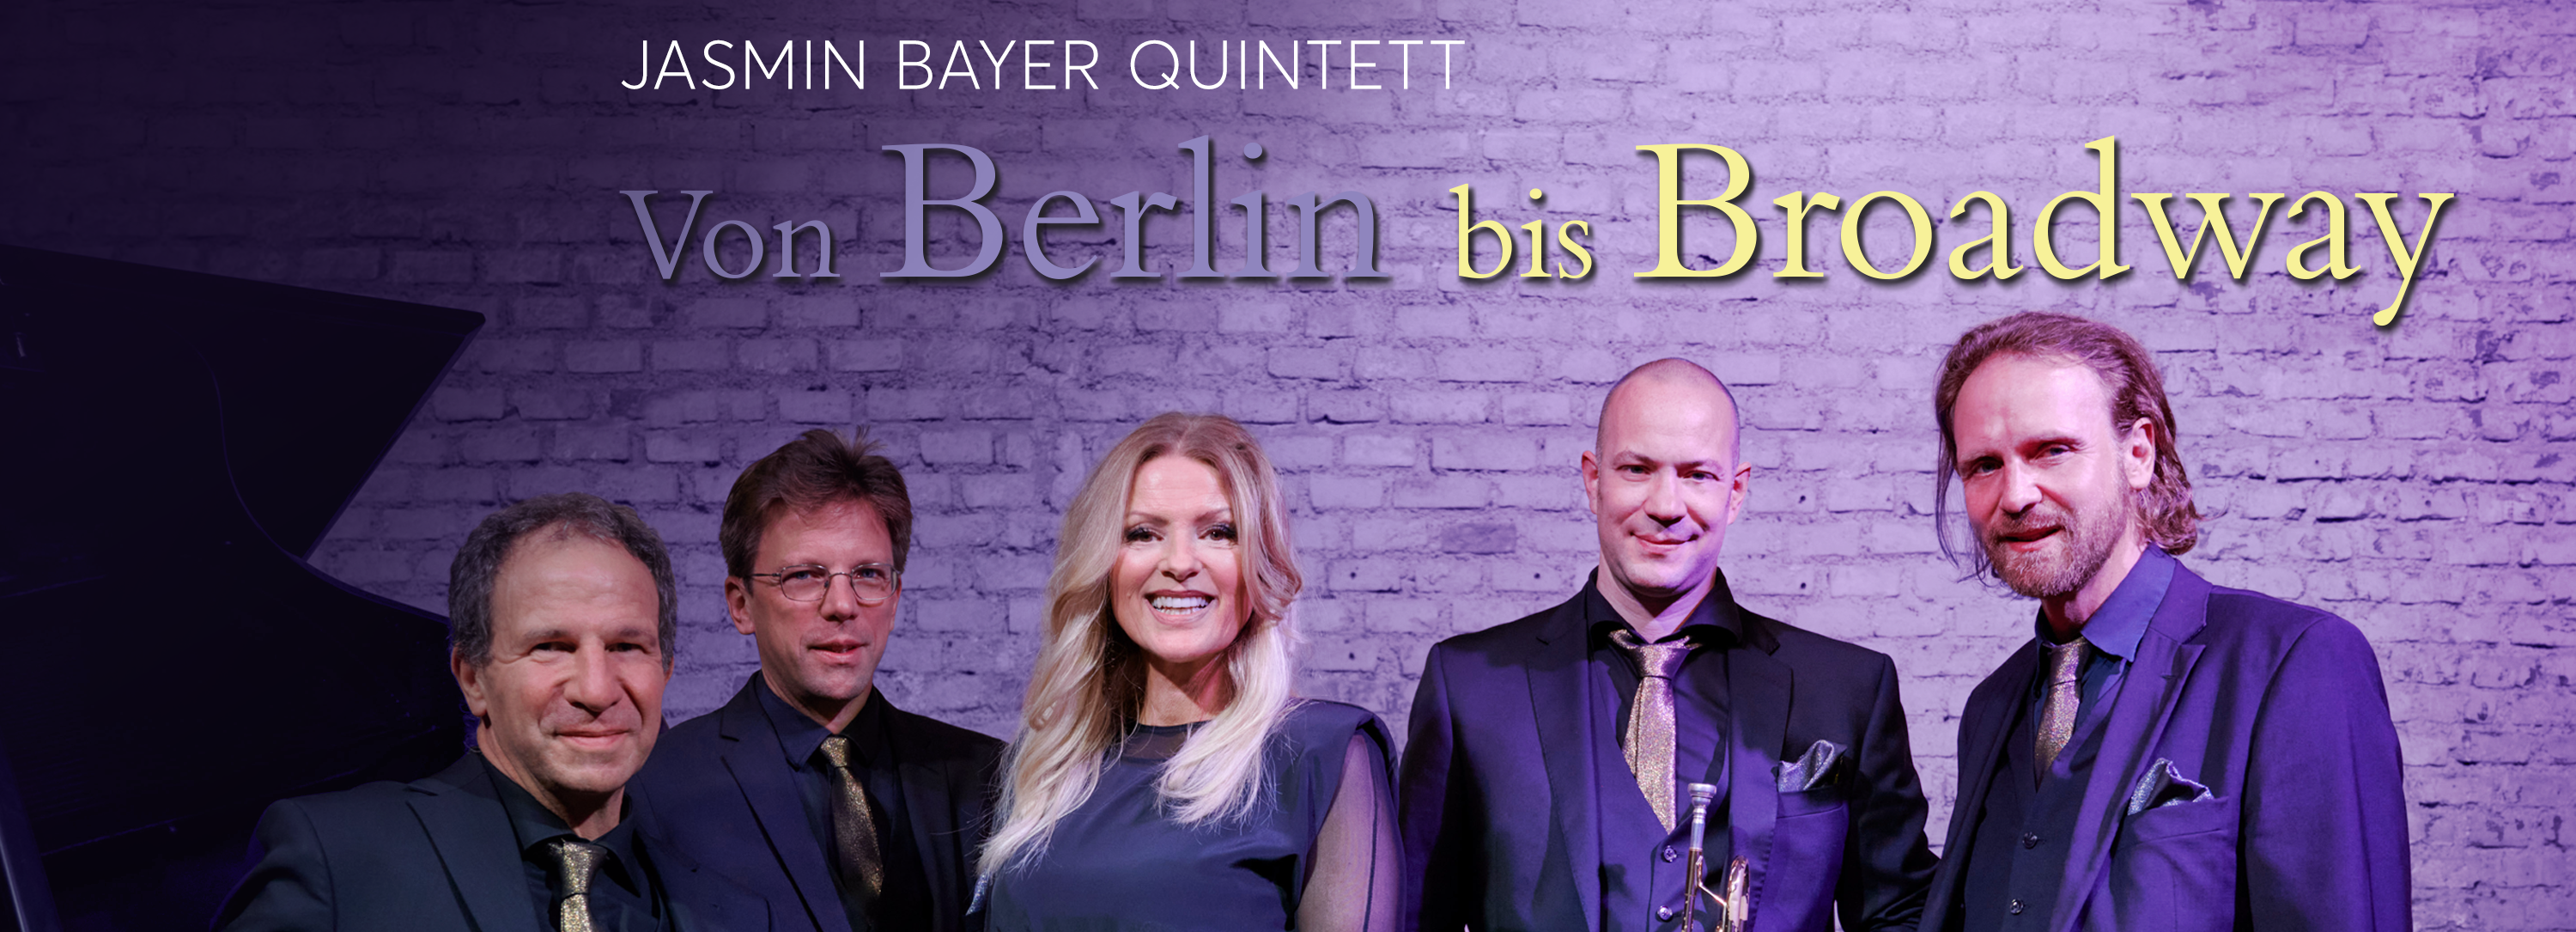 Das Jasmin Bayer Wuartett – Von Berlin bis Broadway im Deutschen Theater München